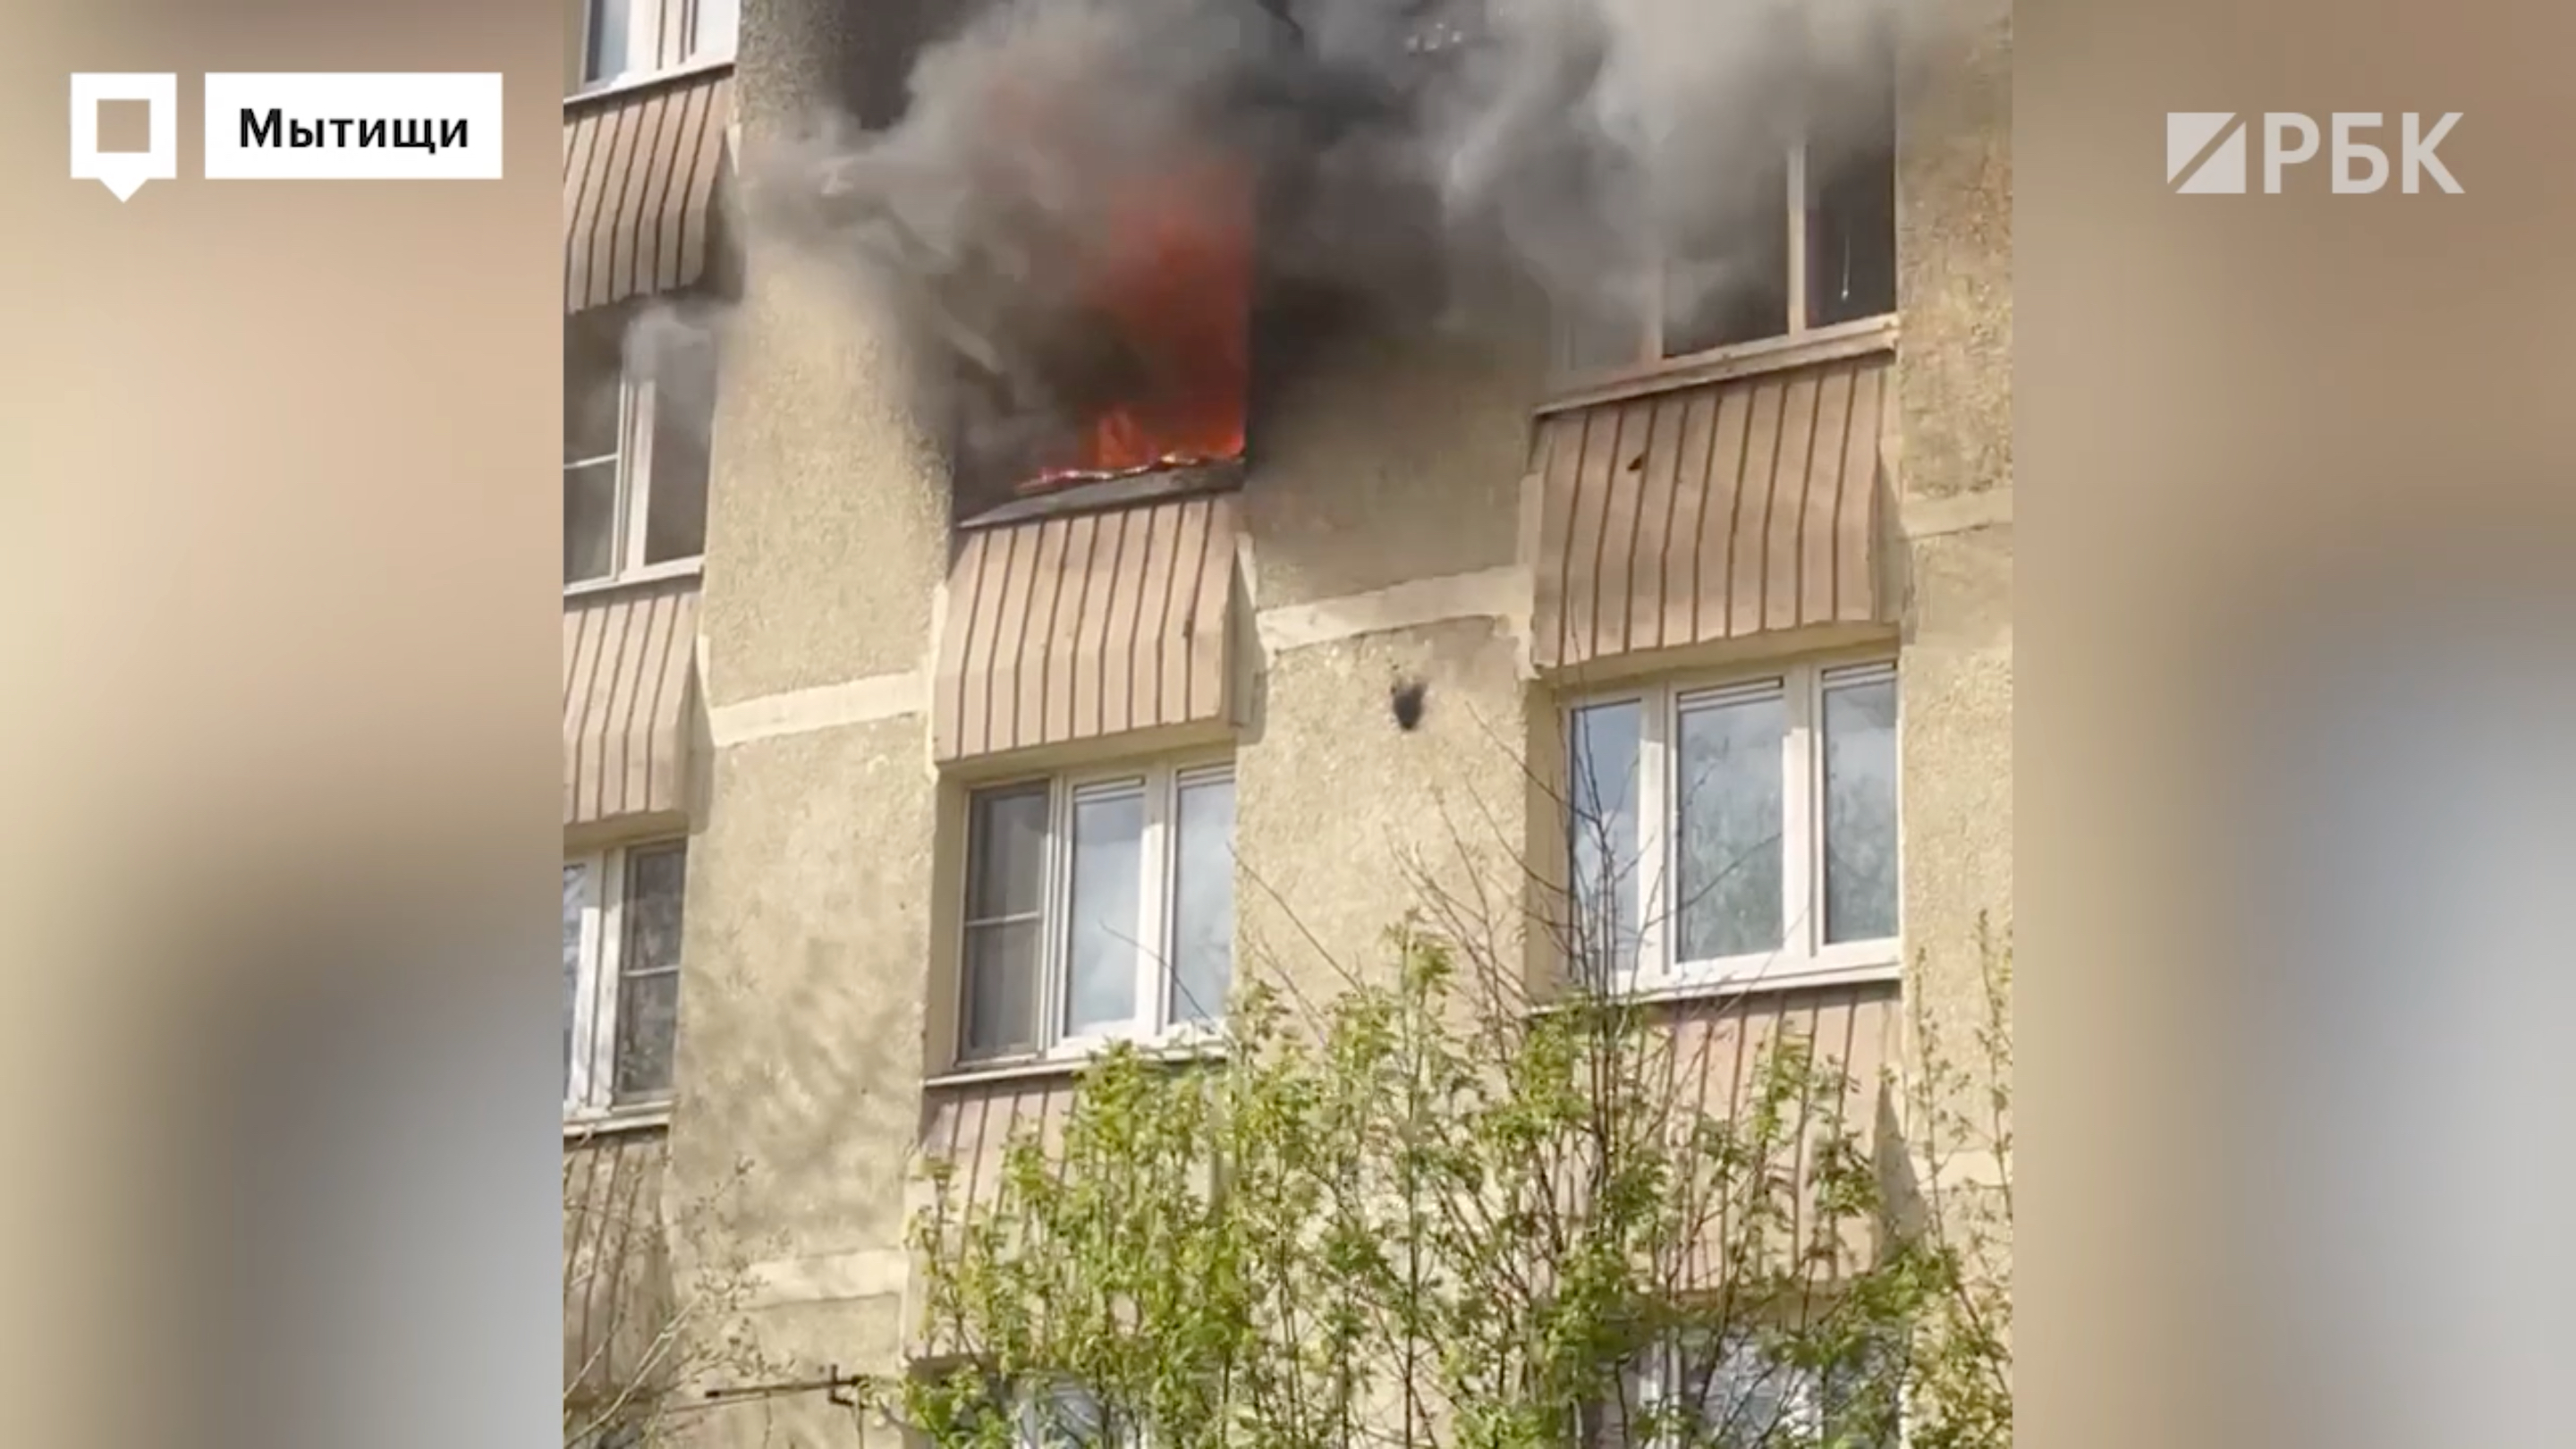 Три человека погибли при пожаре в жилом доме в Мытищах